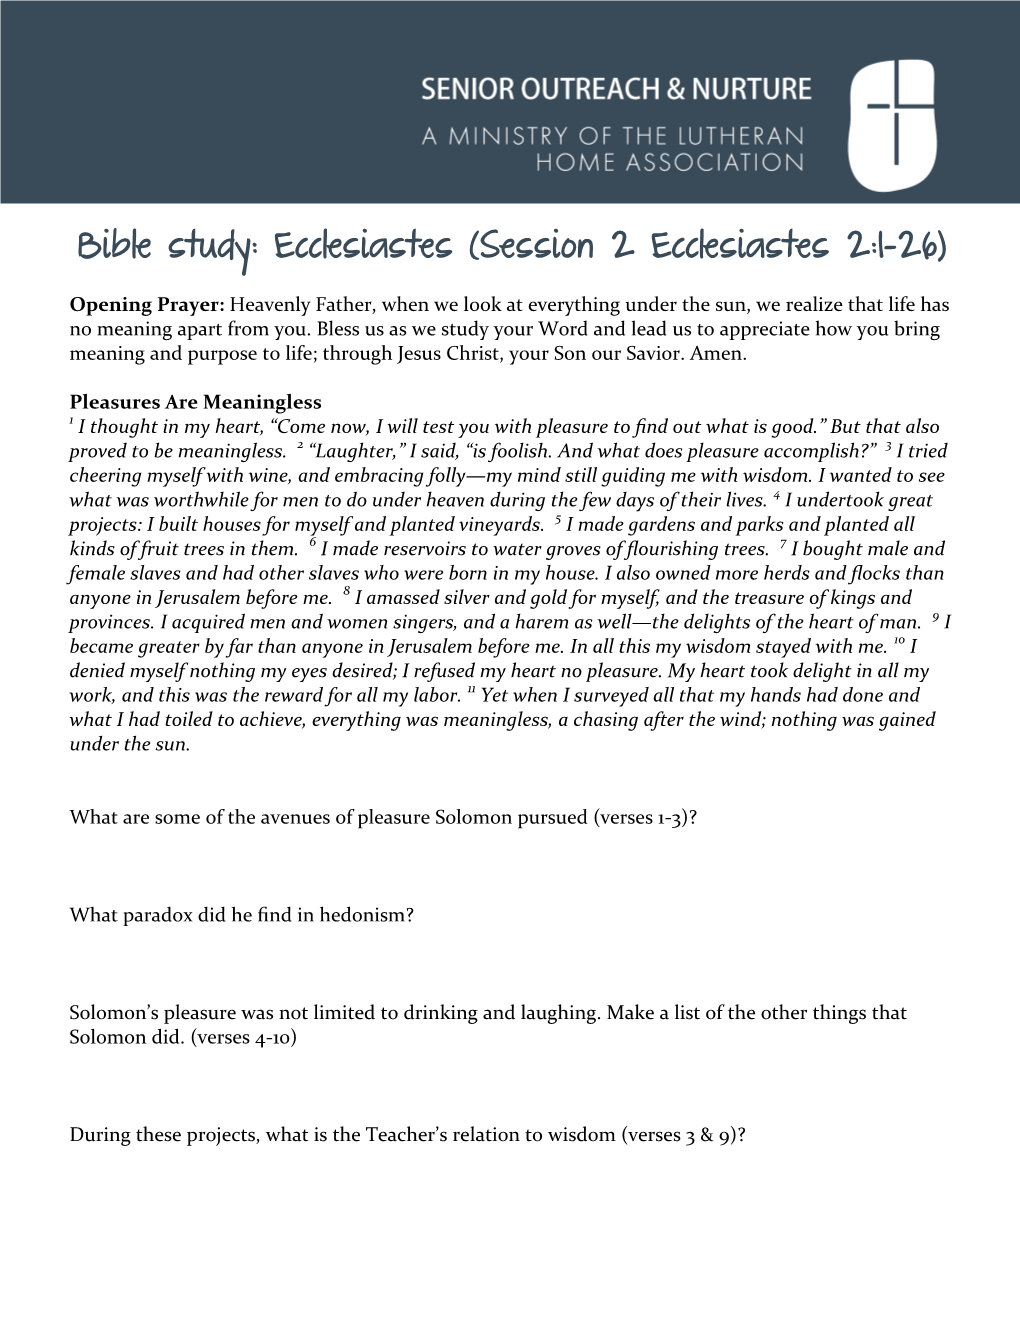 Bible Study: Ecclesiastes (Session 2 Ecclesiastes 2:1-26)